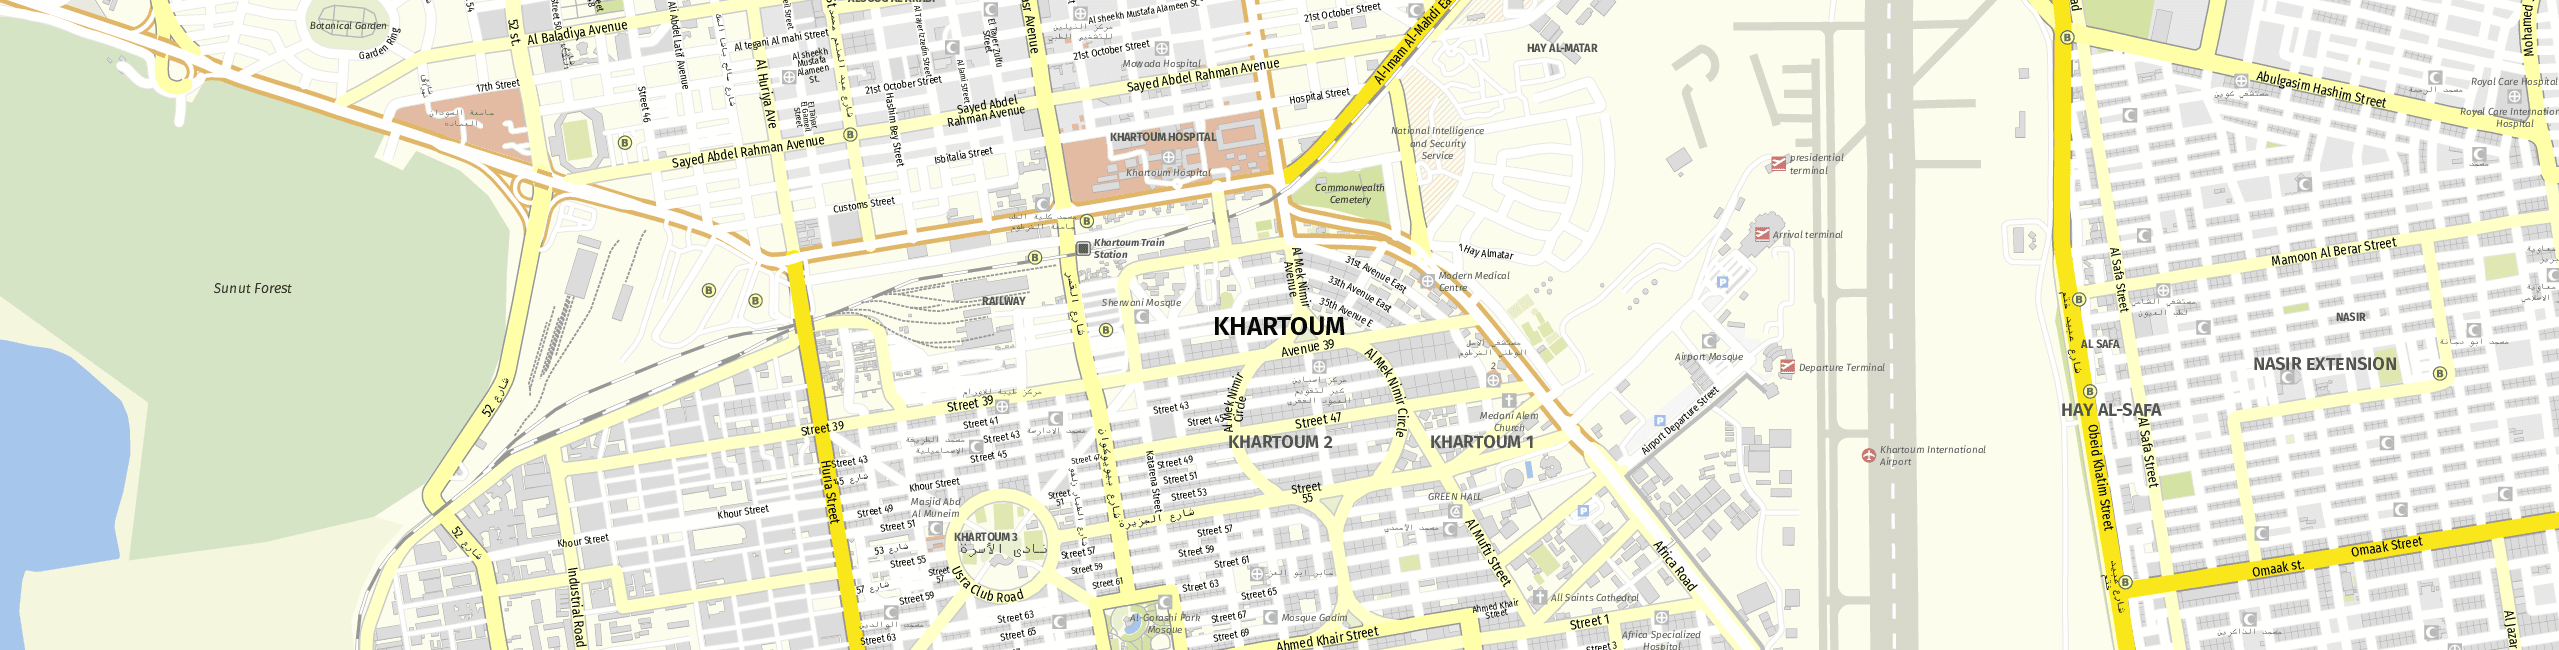 Stadtplan Khartoum zum Downloaden.